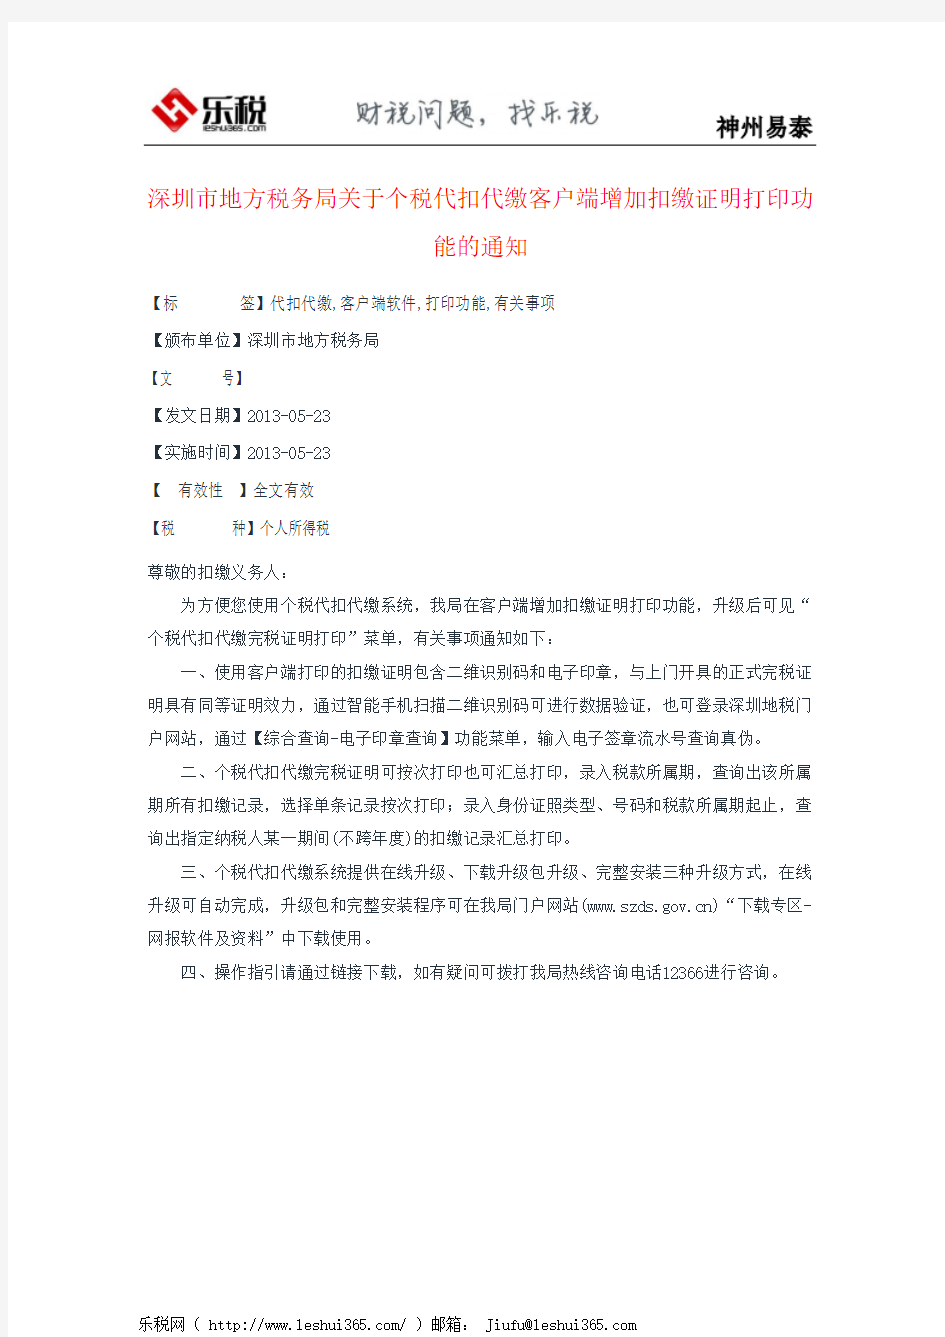 深圳市地方税务局关于个税代扣代缴客户端增加扣缴证明打印功能的通知